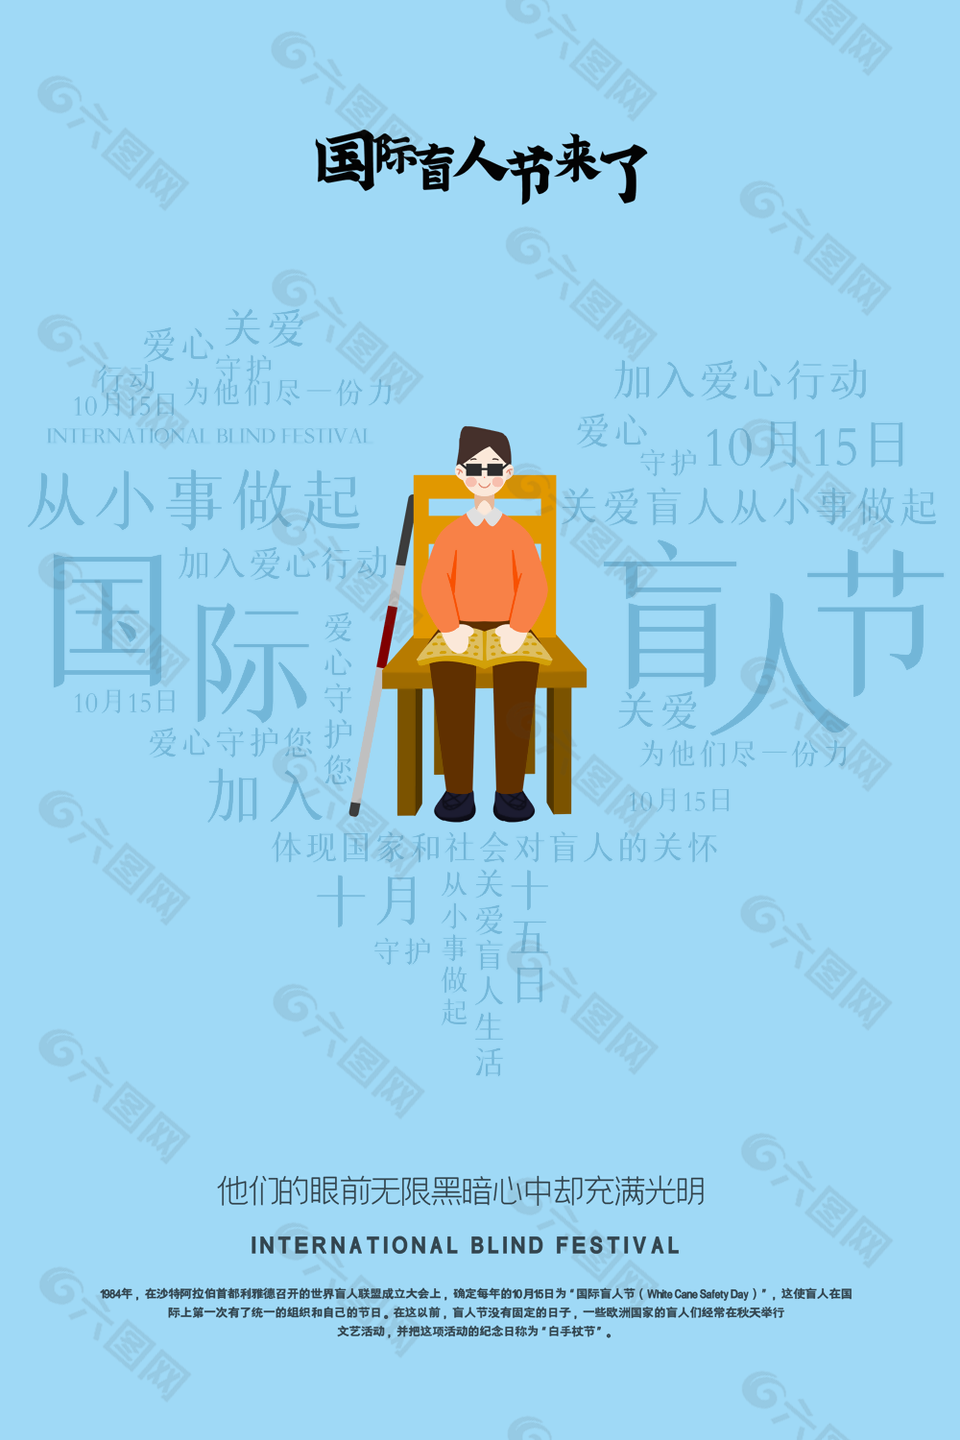 蓝色简约手绘国际盲人节爱心行动插画海报